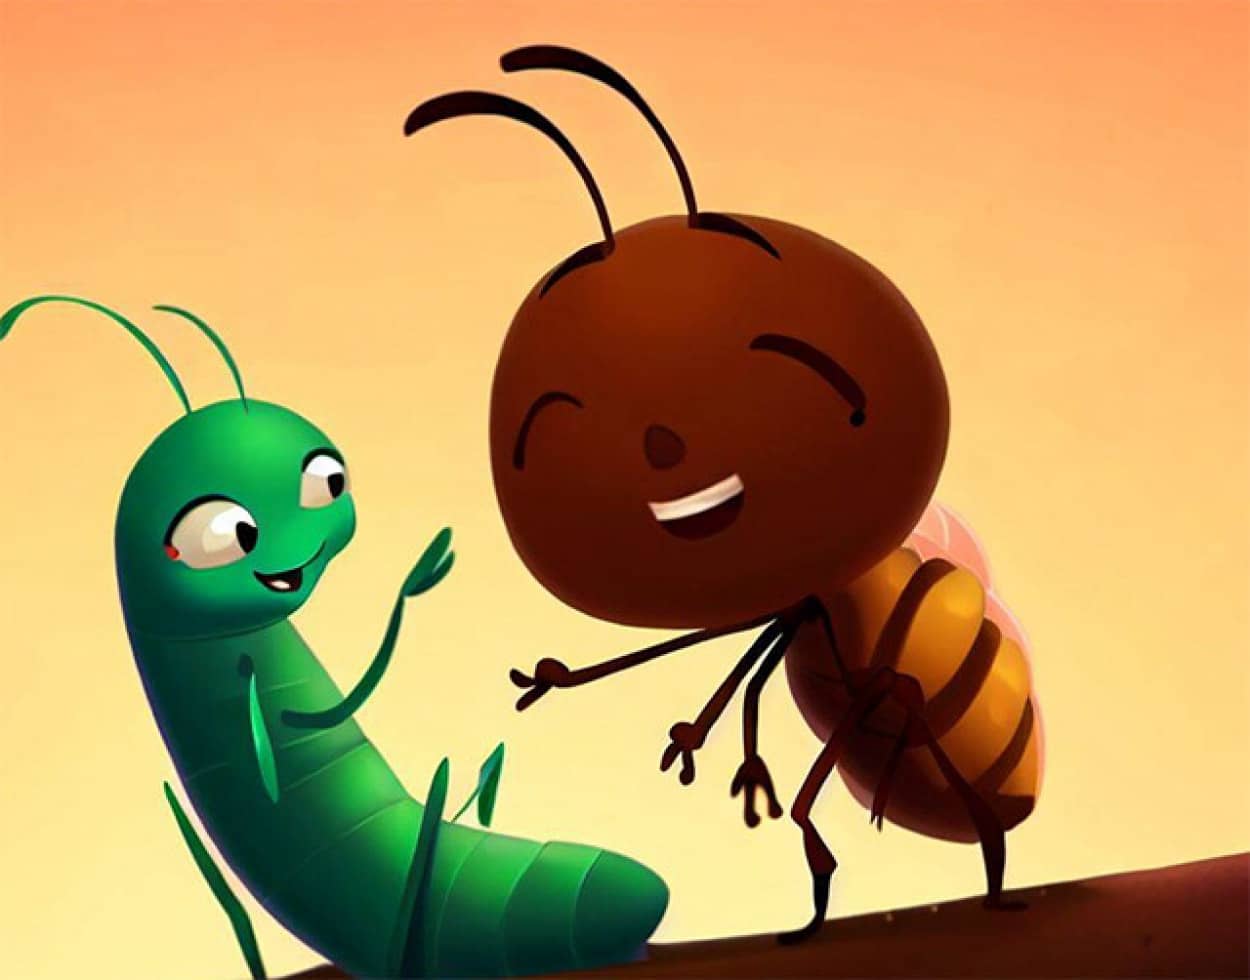 アリの寿命を延ばし、仲間からVIP待遇を受けられるようにする寄生虫